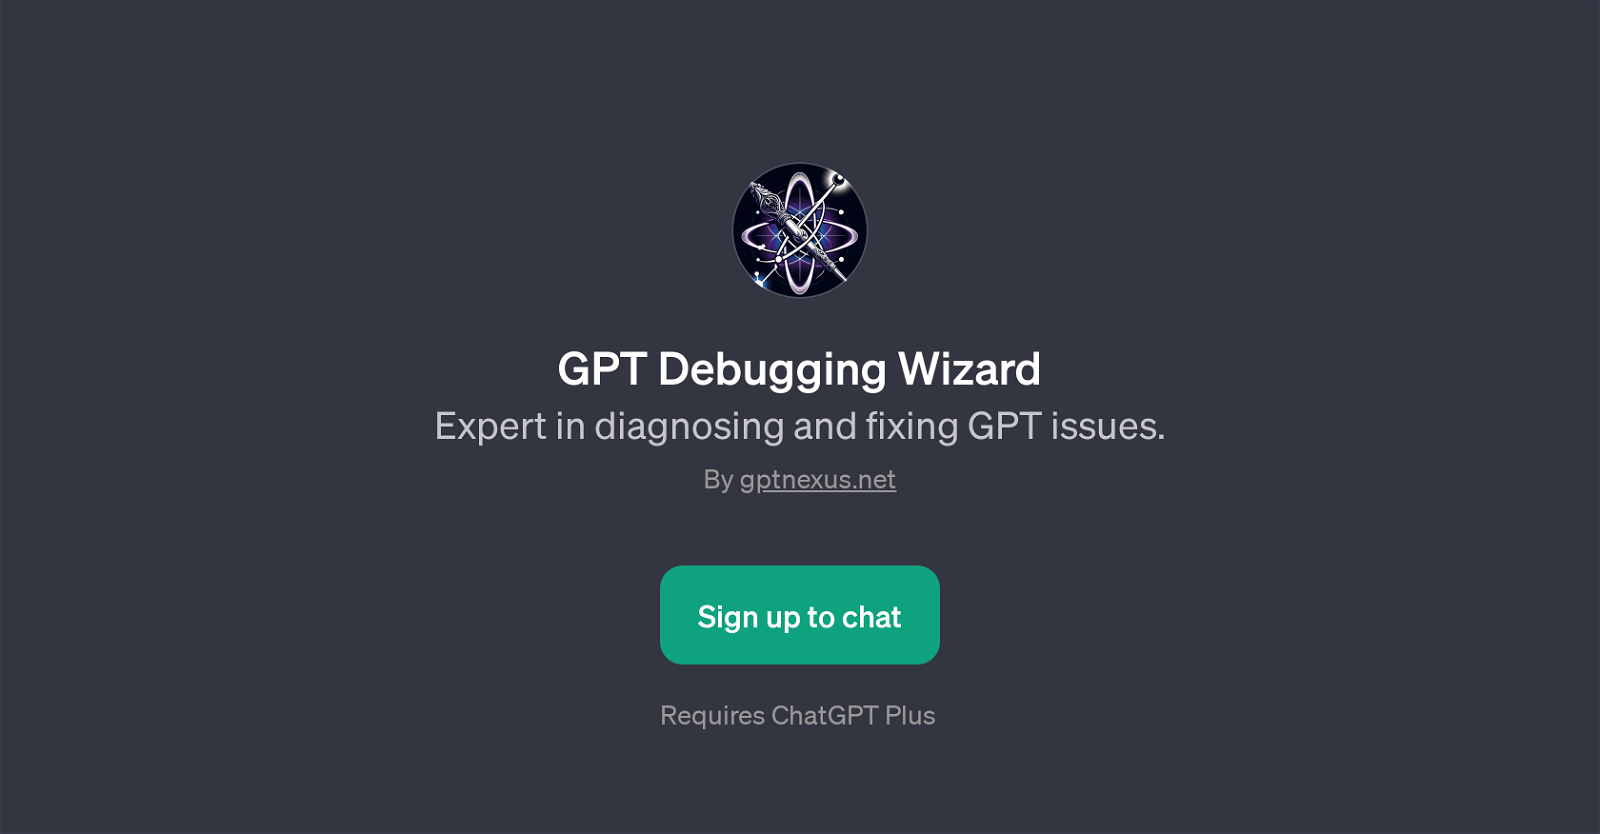 GPT Debugging Wizard website